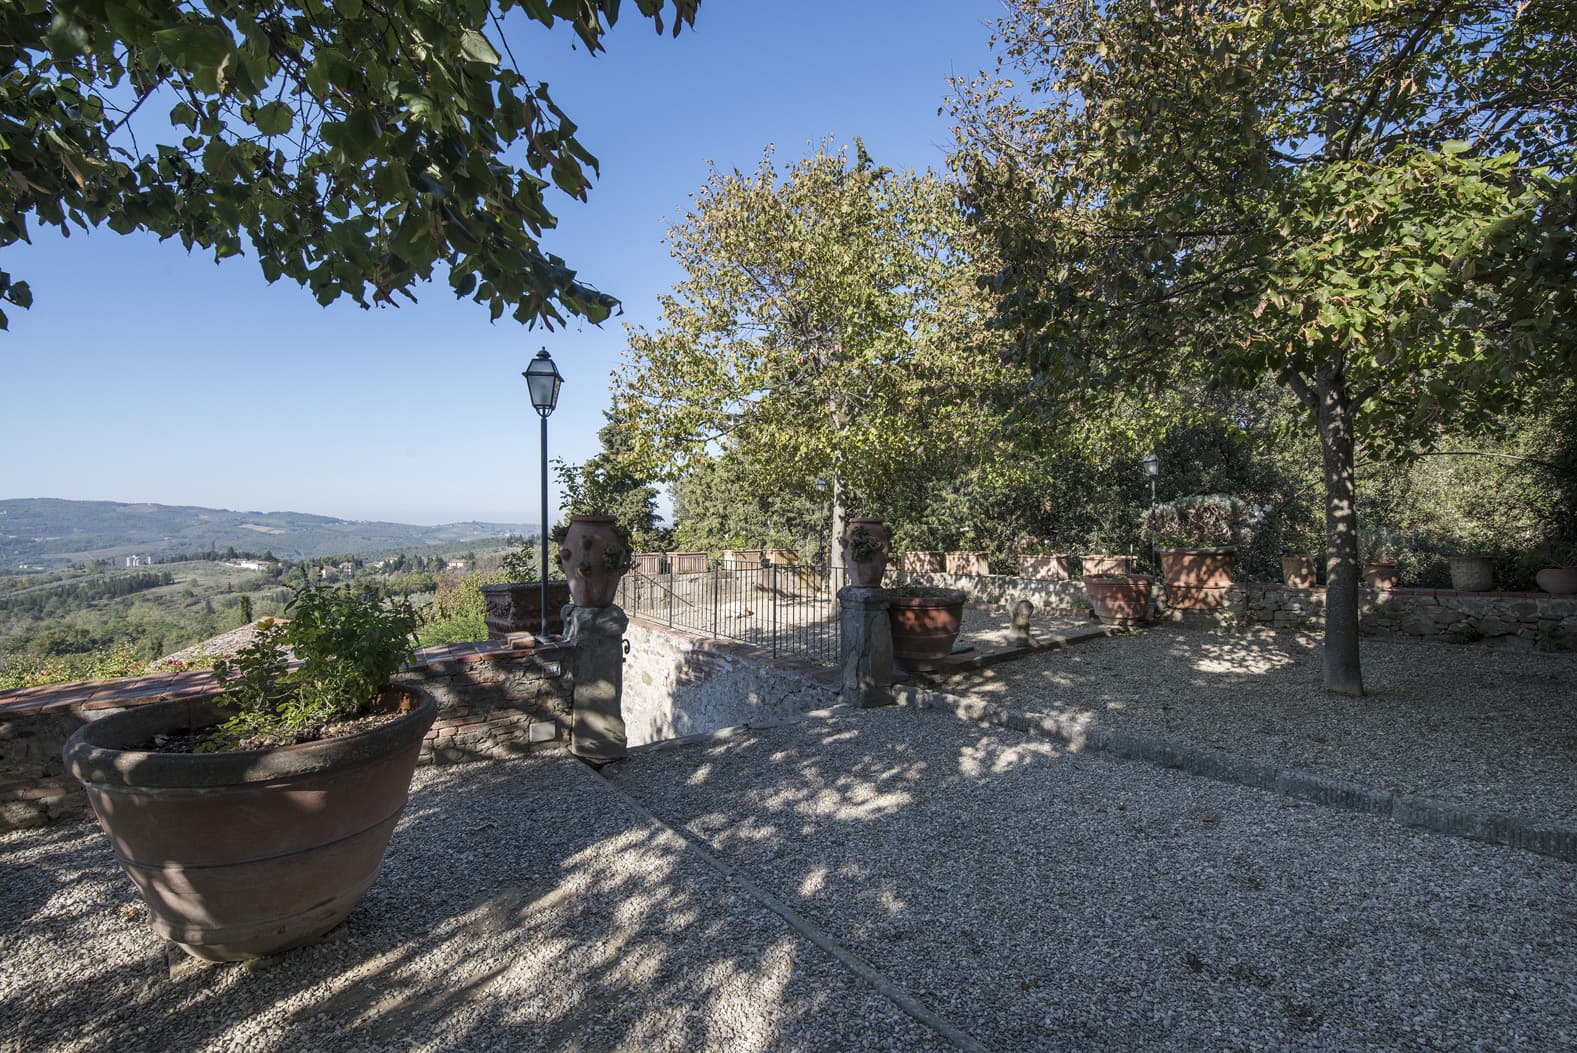  Bedroom Villa For Sale Borgo In Chianti Lp0793 24d2fc373ce87800.jpg